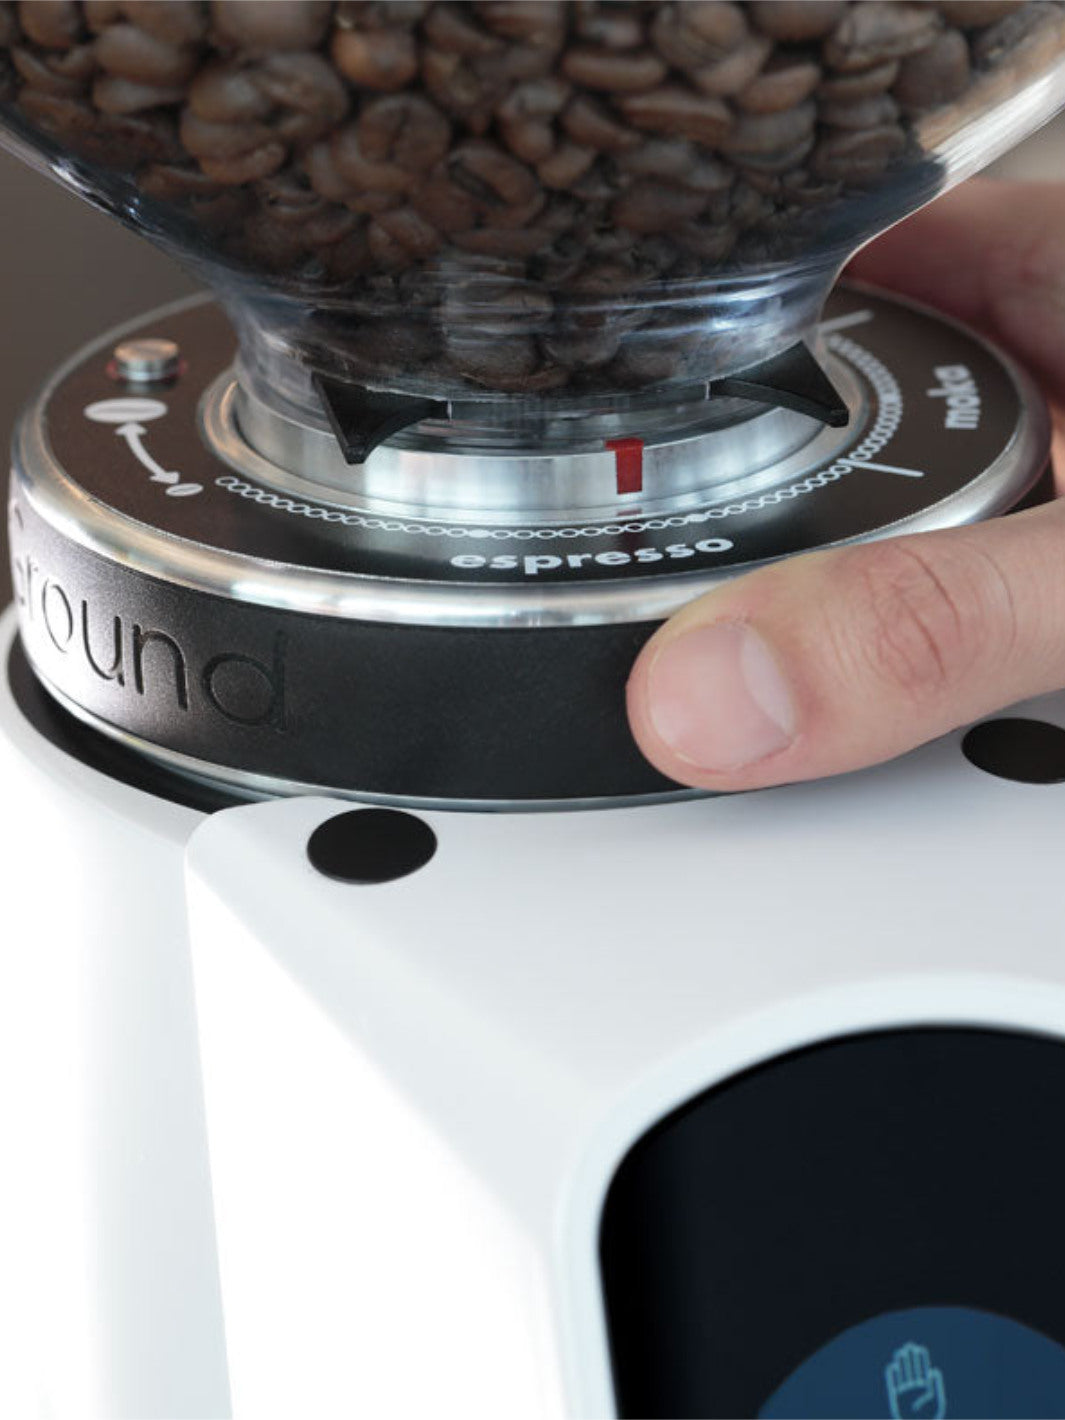 FIORENZATO AllGround Coffee Grinder (120V)